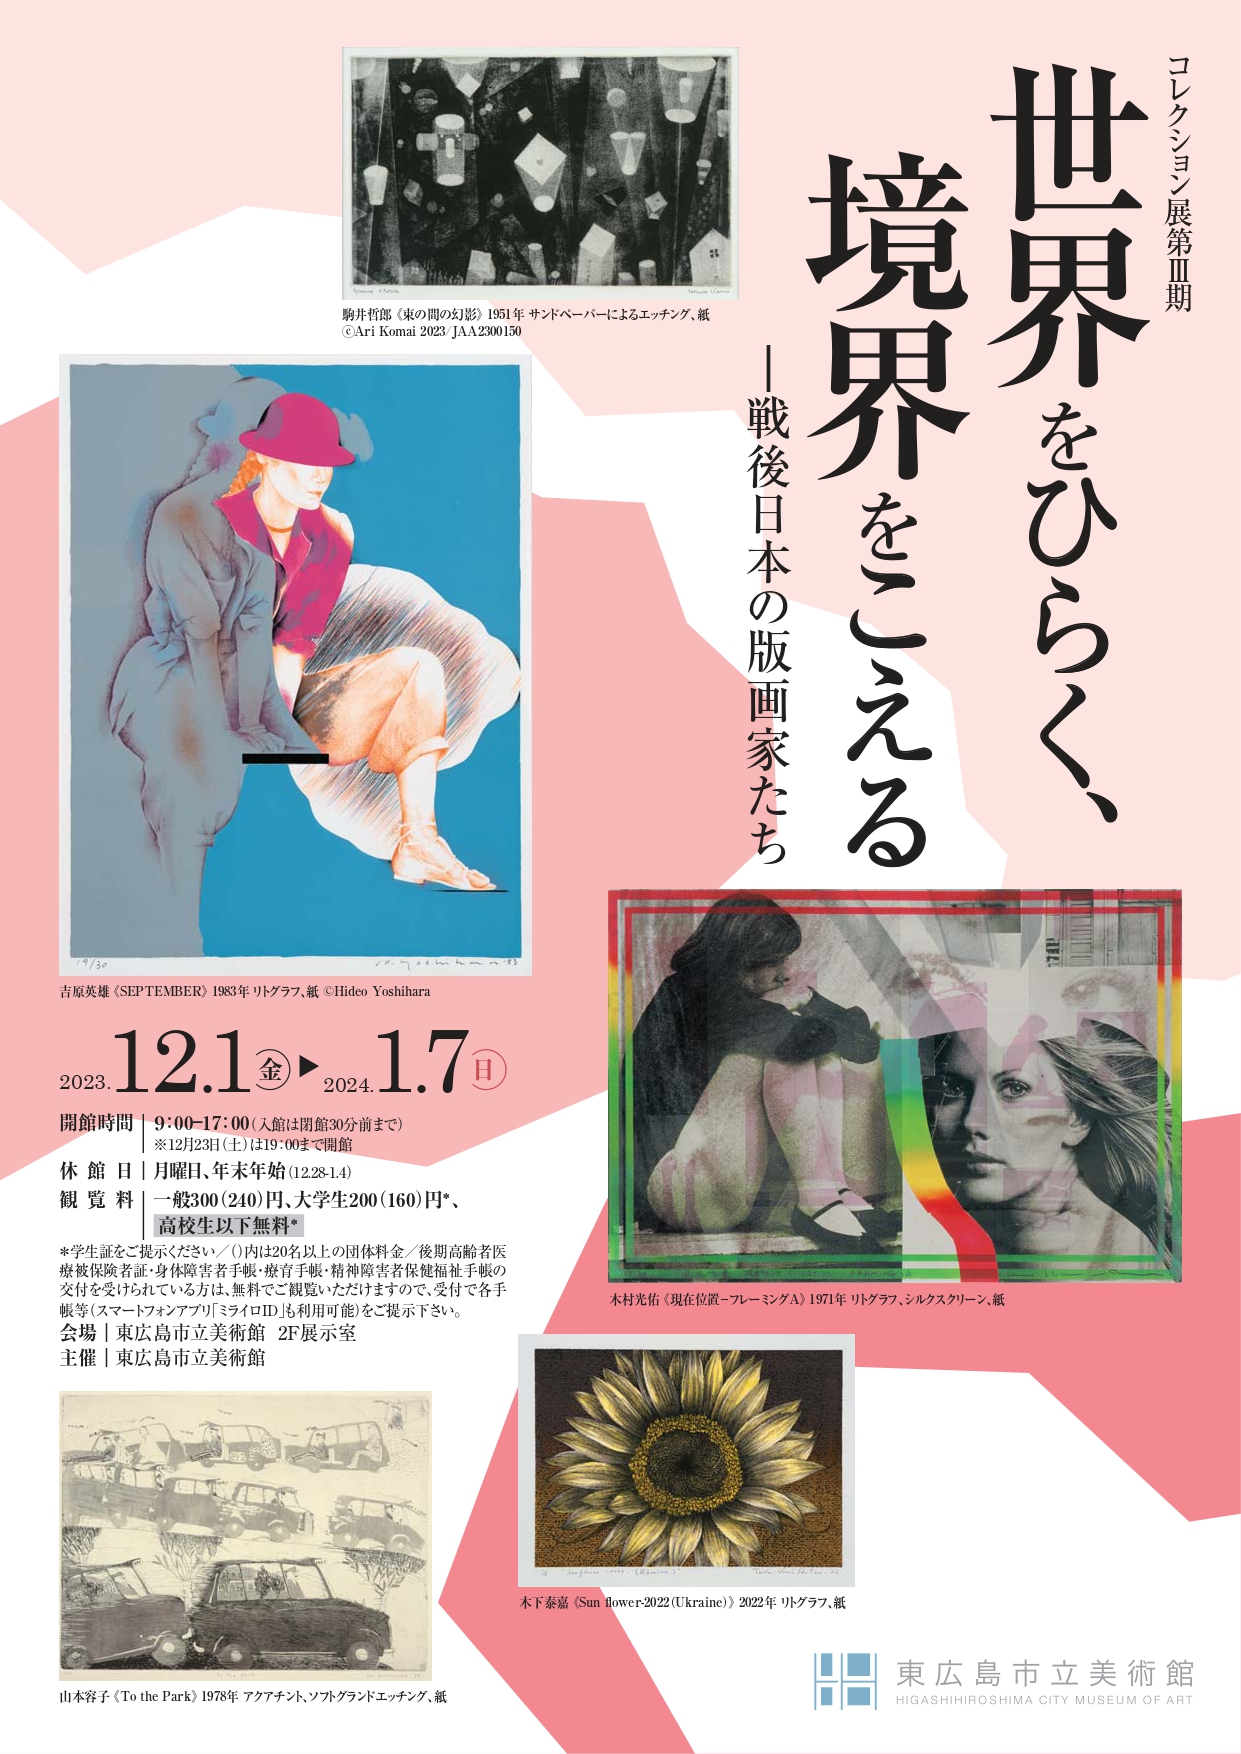 コレクション展第Ⅲ期 世界をひらく、境界をこえる―戦後日本の版画家たち【pickup】